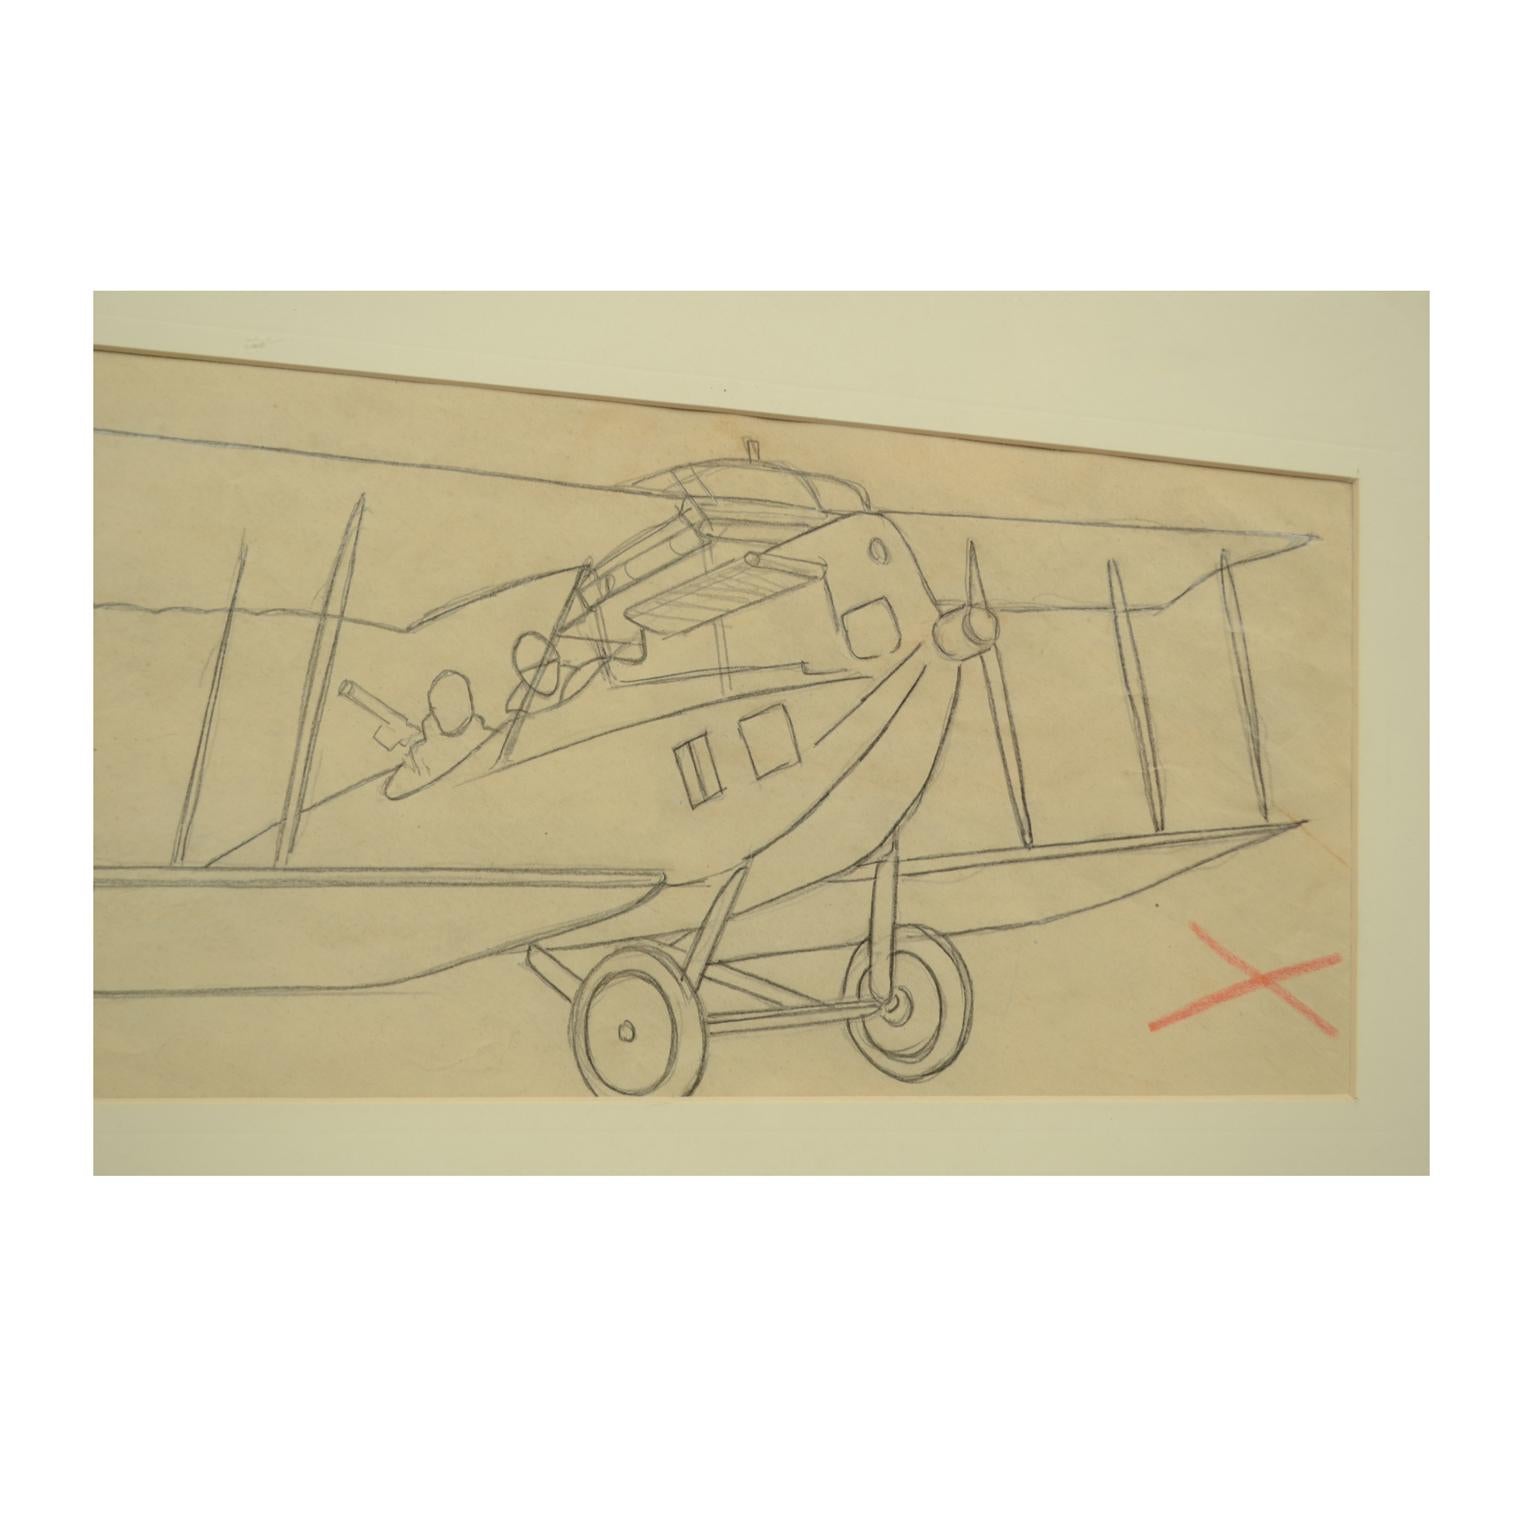 Dessin au crayon réalisé par Riccardo Cavigioli au début des années 1920 représentant un avion biplan biplace de reconnaissance C.I.C. de 1916. Dimensions avec le cadre cm 58 x 31, inch 23 x 11.8.

Riccardo Cavigioli est né à Milan le 10 novembre